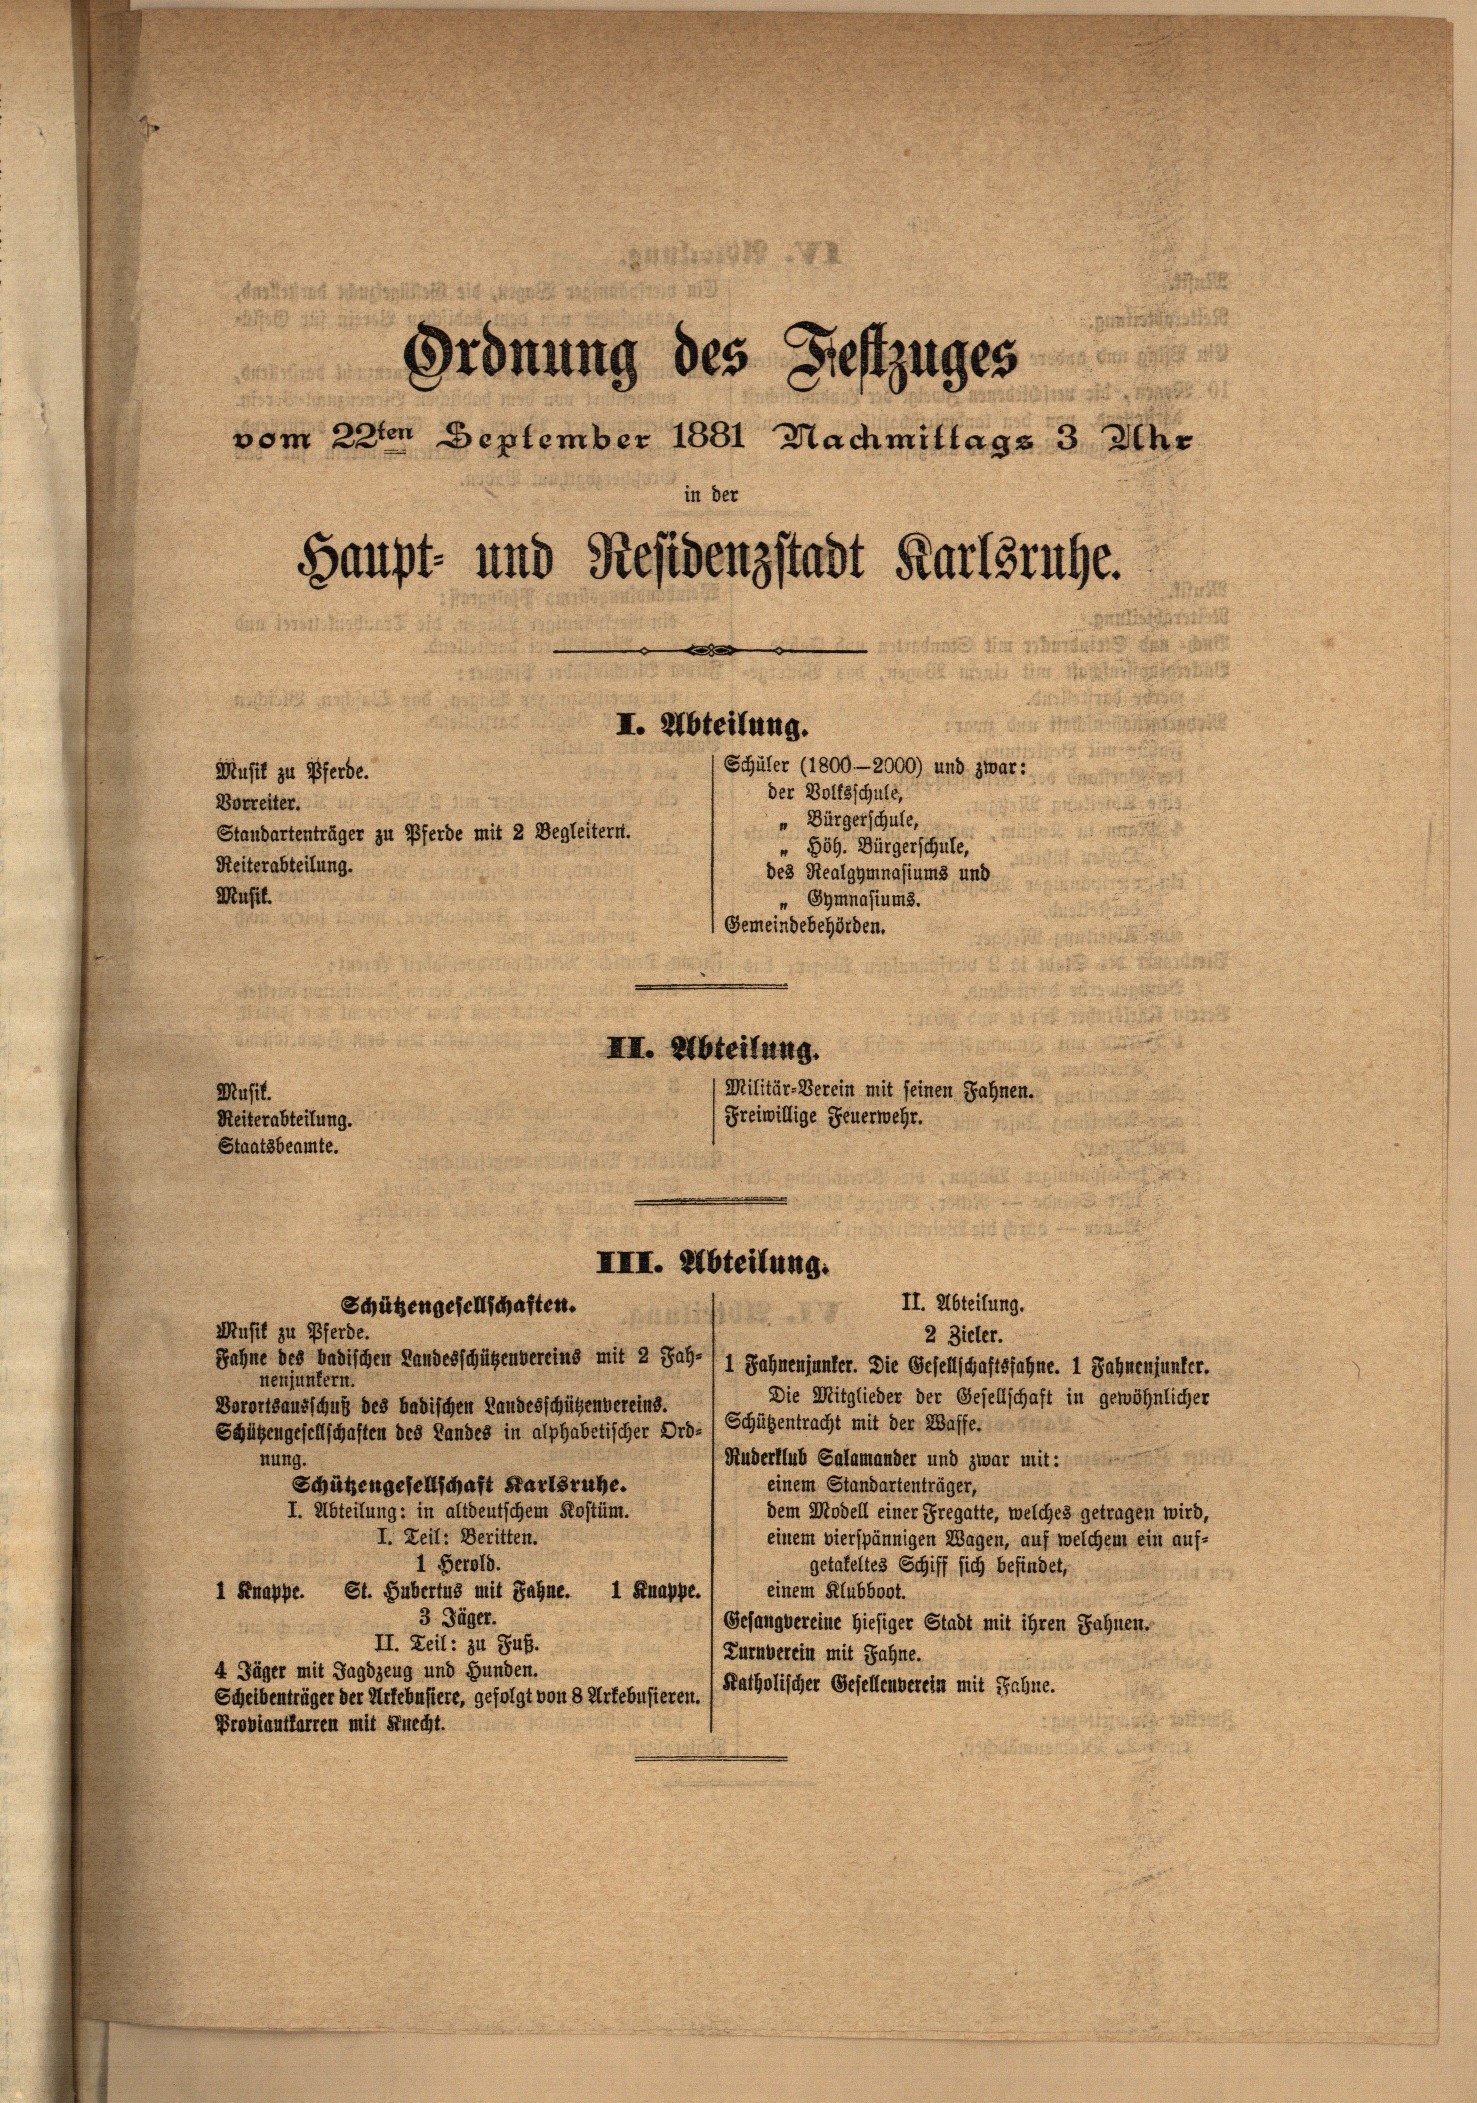 Zu sehen ist ein Digitalisat der Titelseite der Karlsruher Zeitung mit der Abfolge der beteiligten Gruppierungen beim großen Festzug anlässlich der Silbernen Hochzeit von Luise und Friedrich von Baden am 21. September 1881.